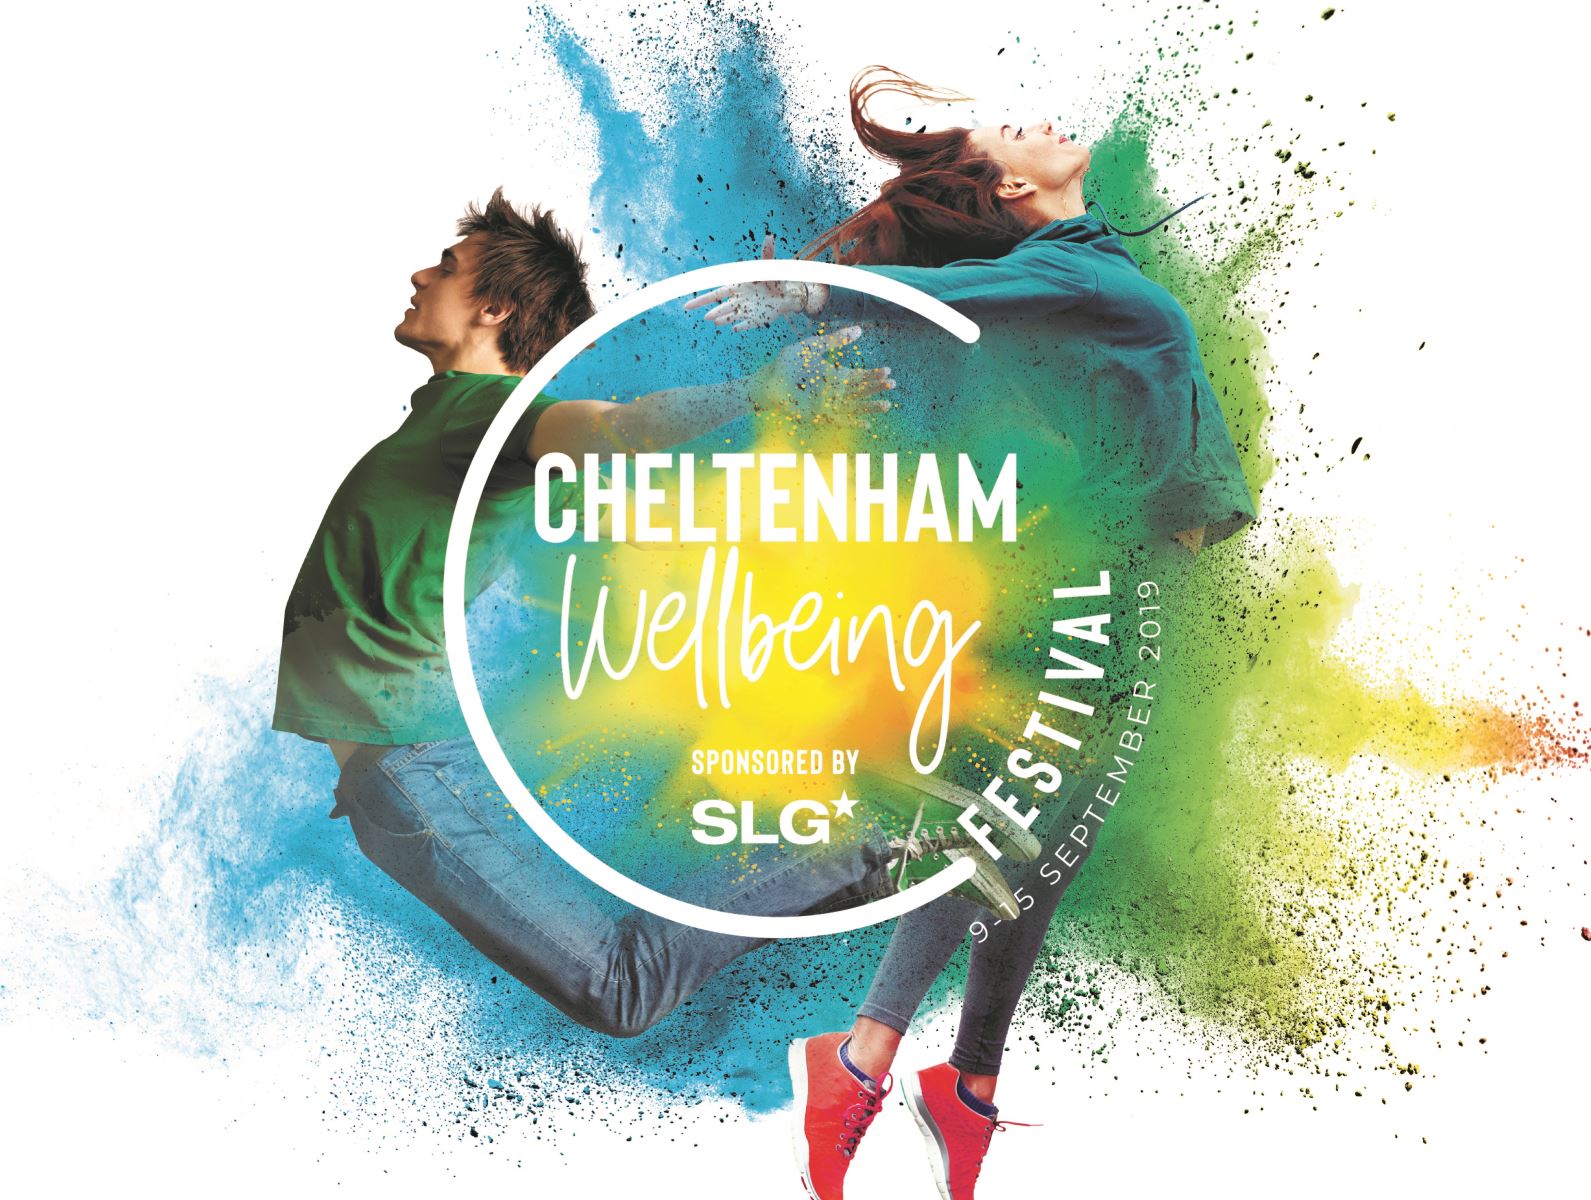 Cheltenham Wellbeing Festival promotional poster